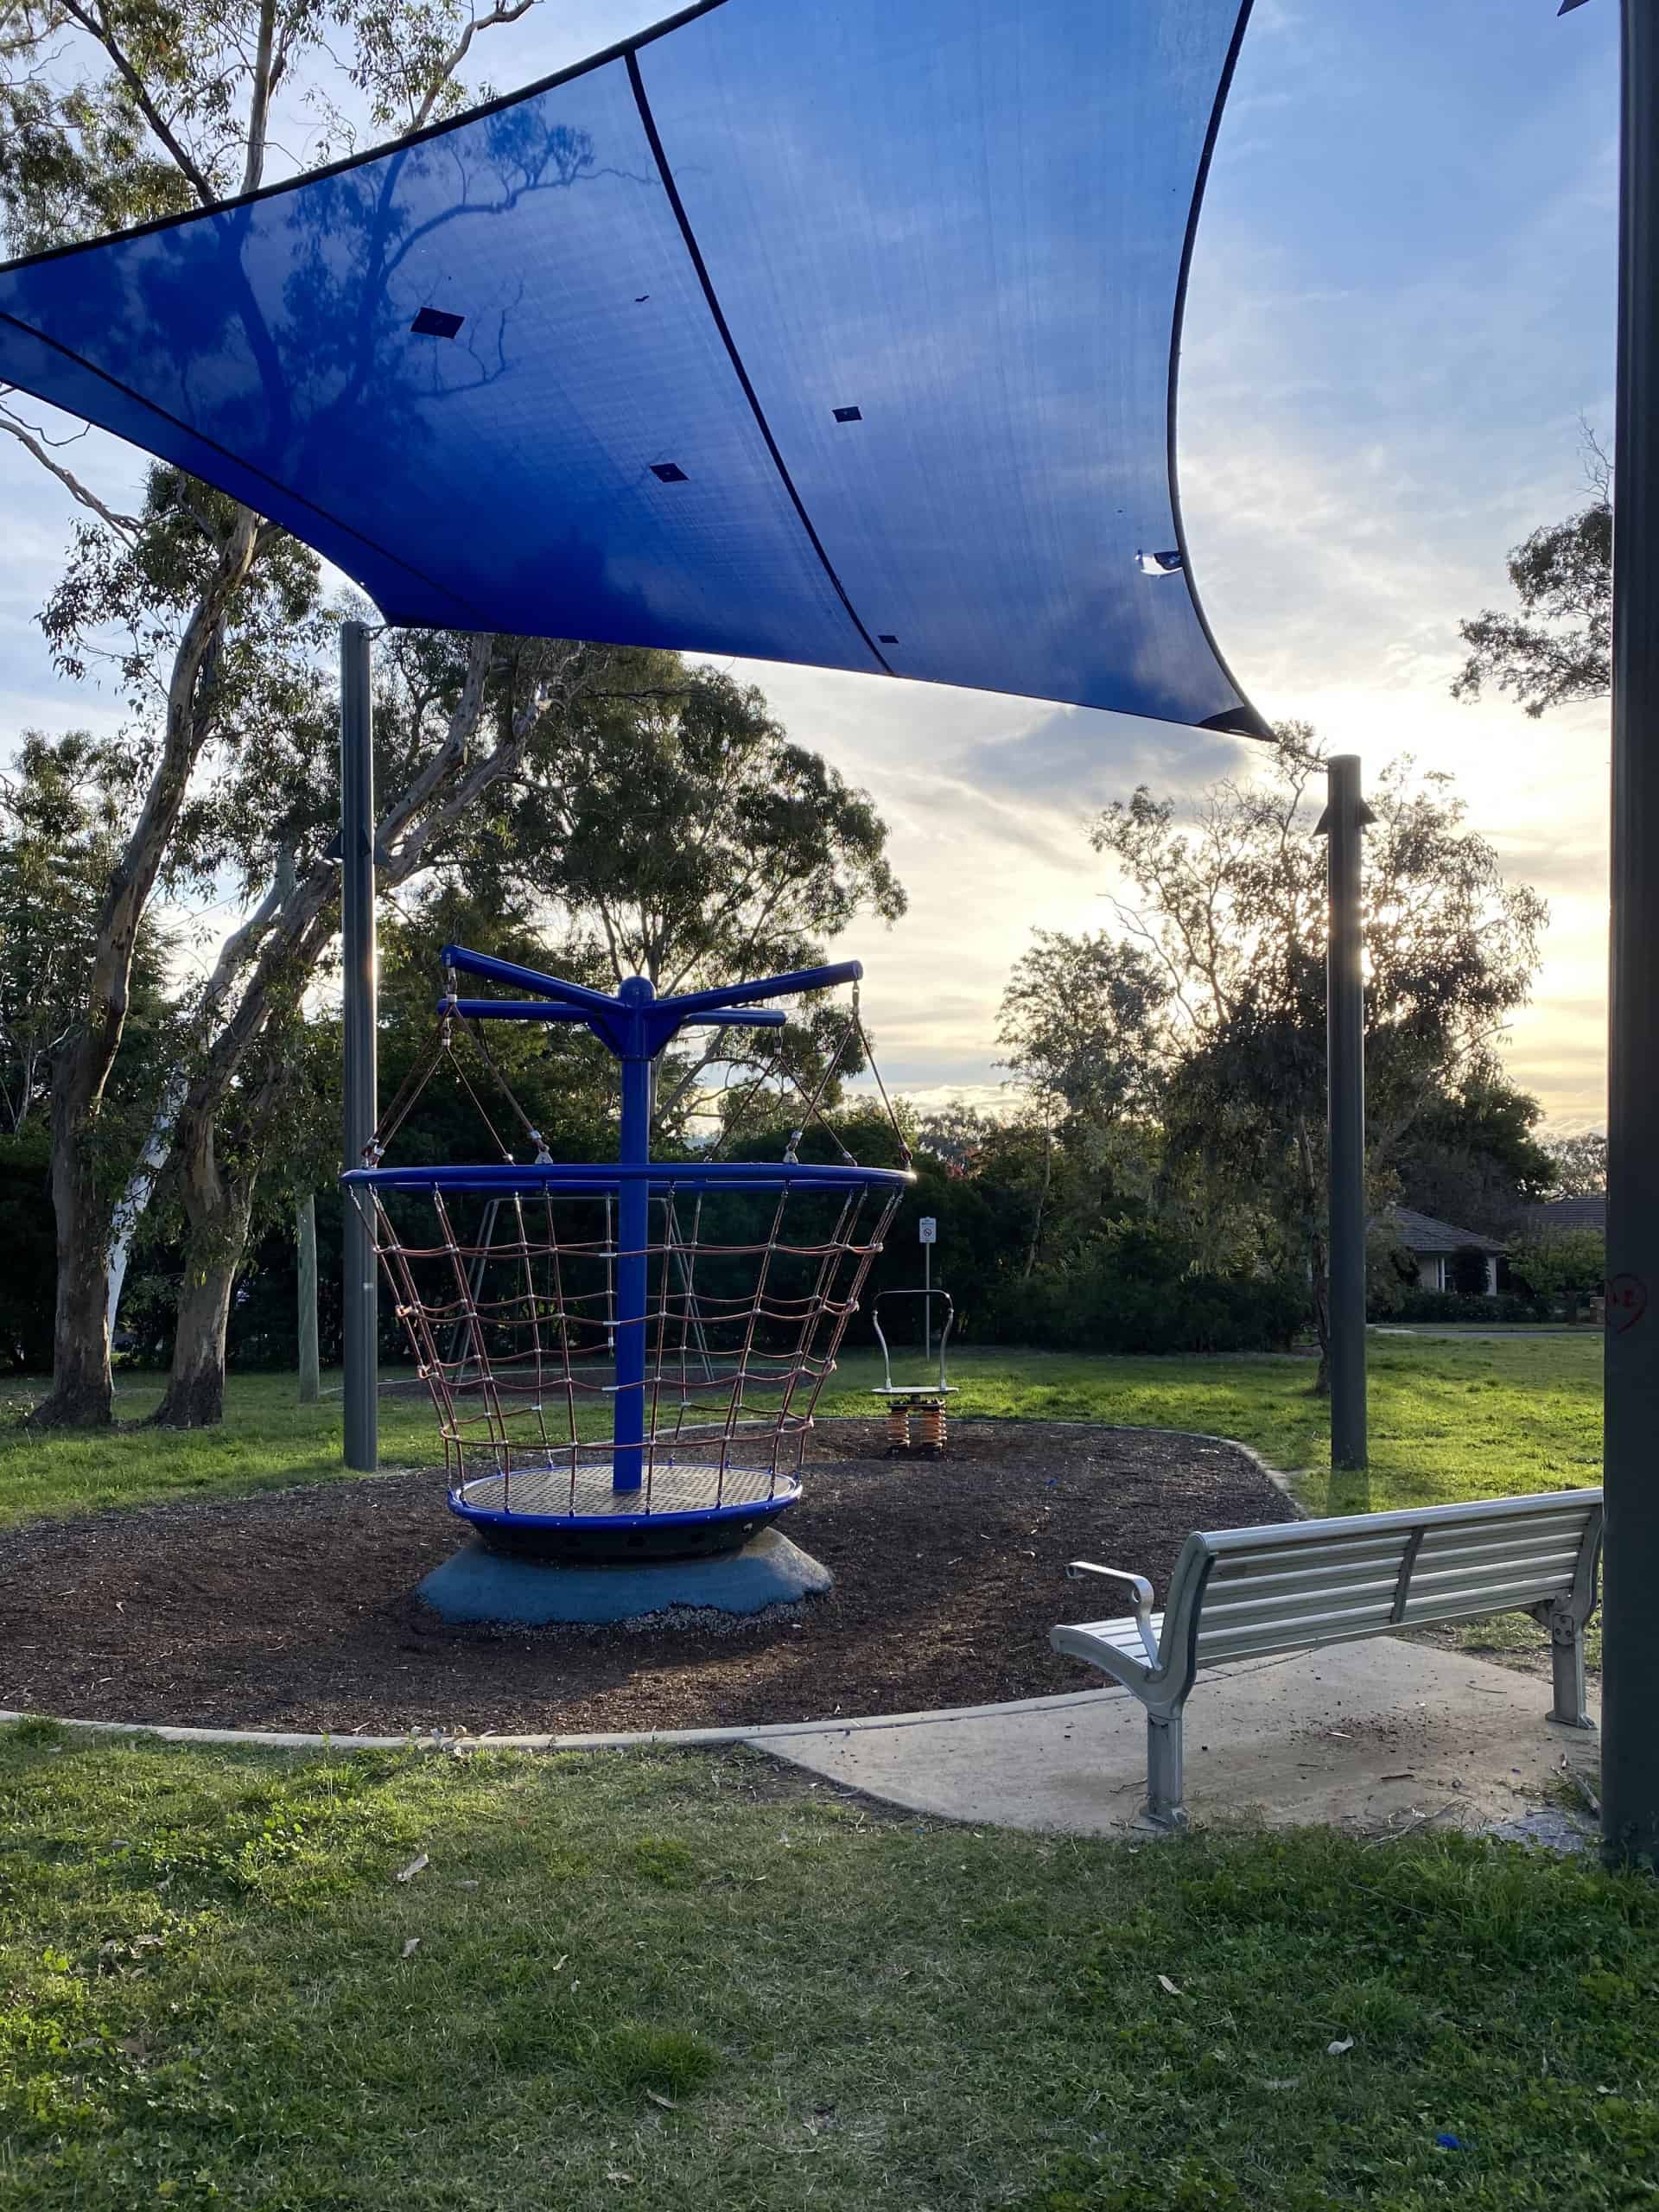 Corroboree Park Playground